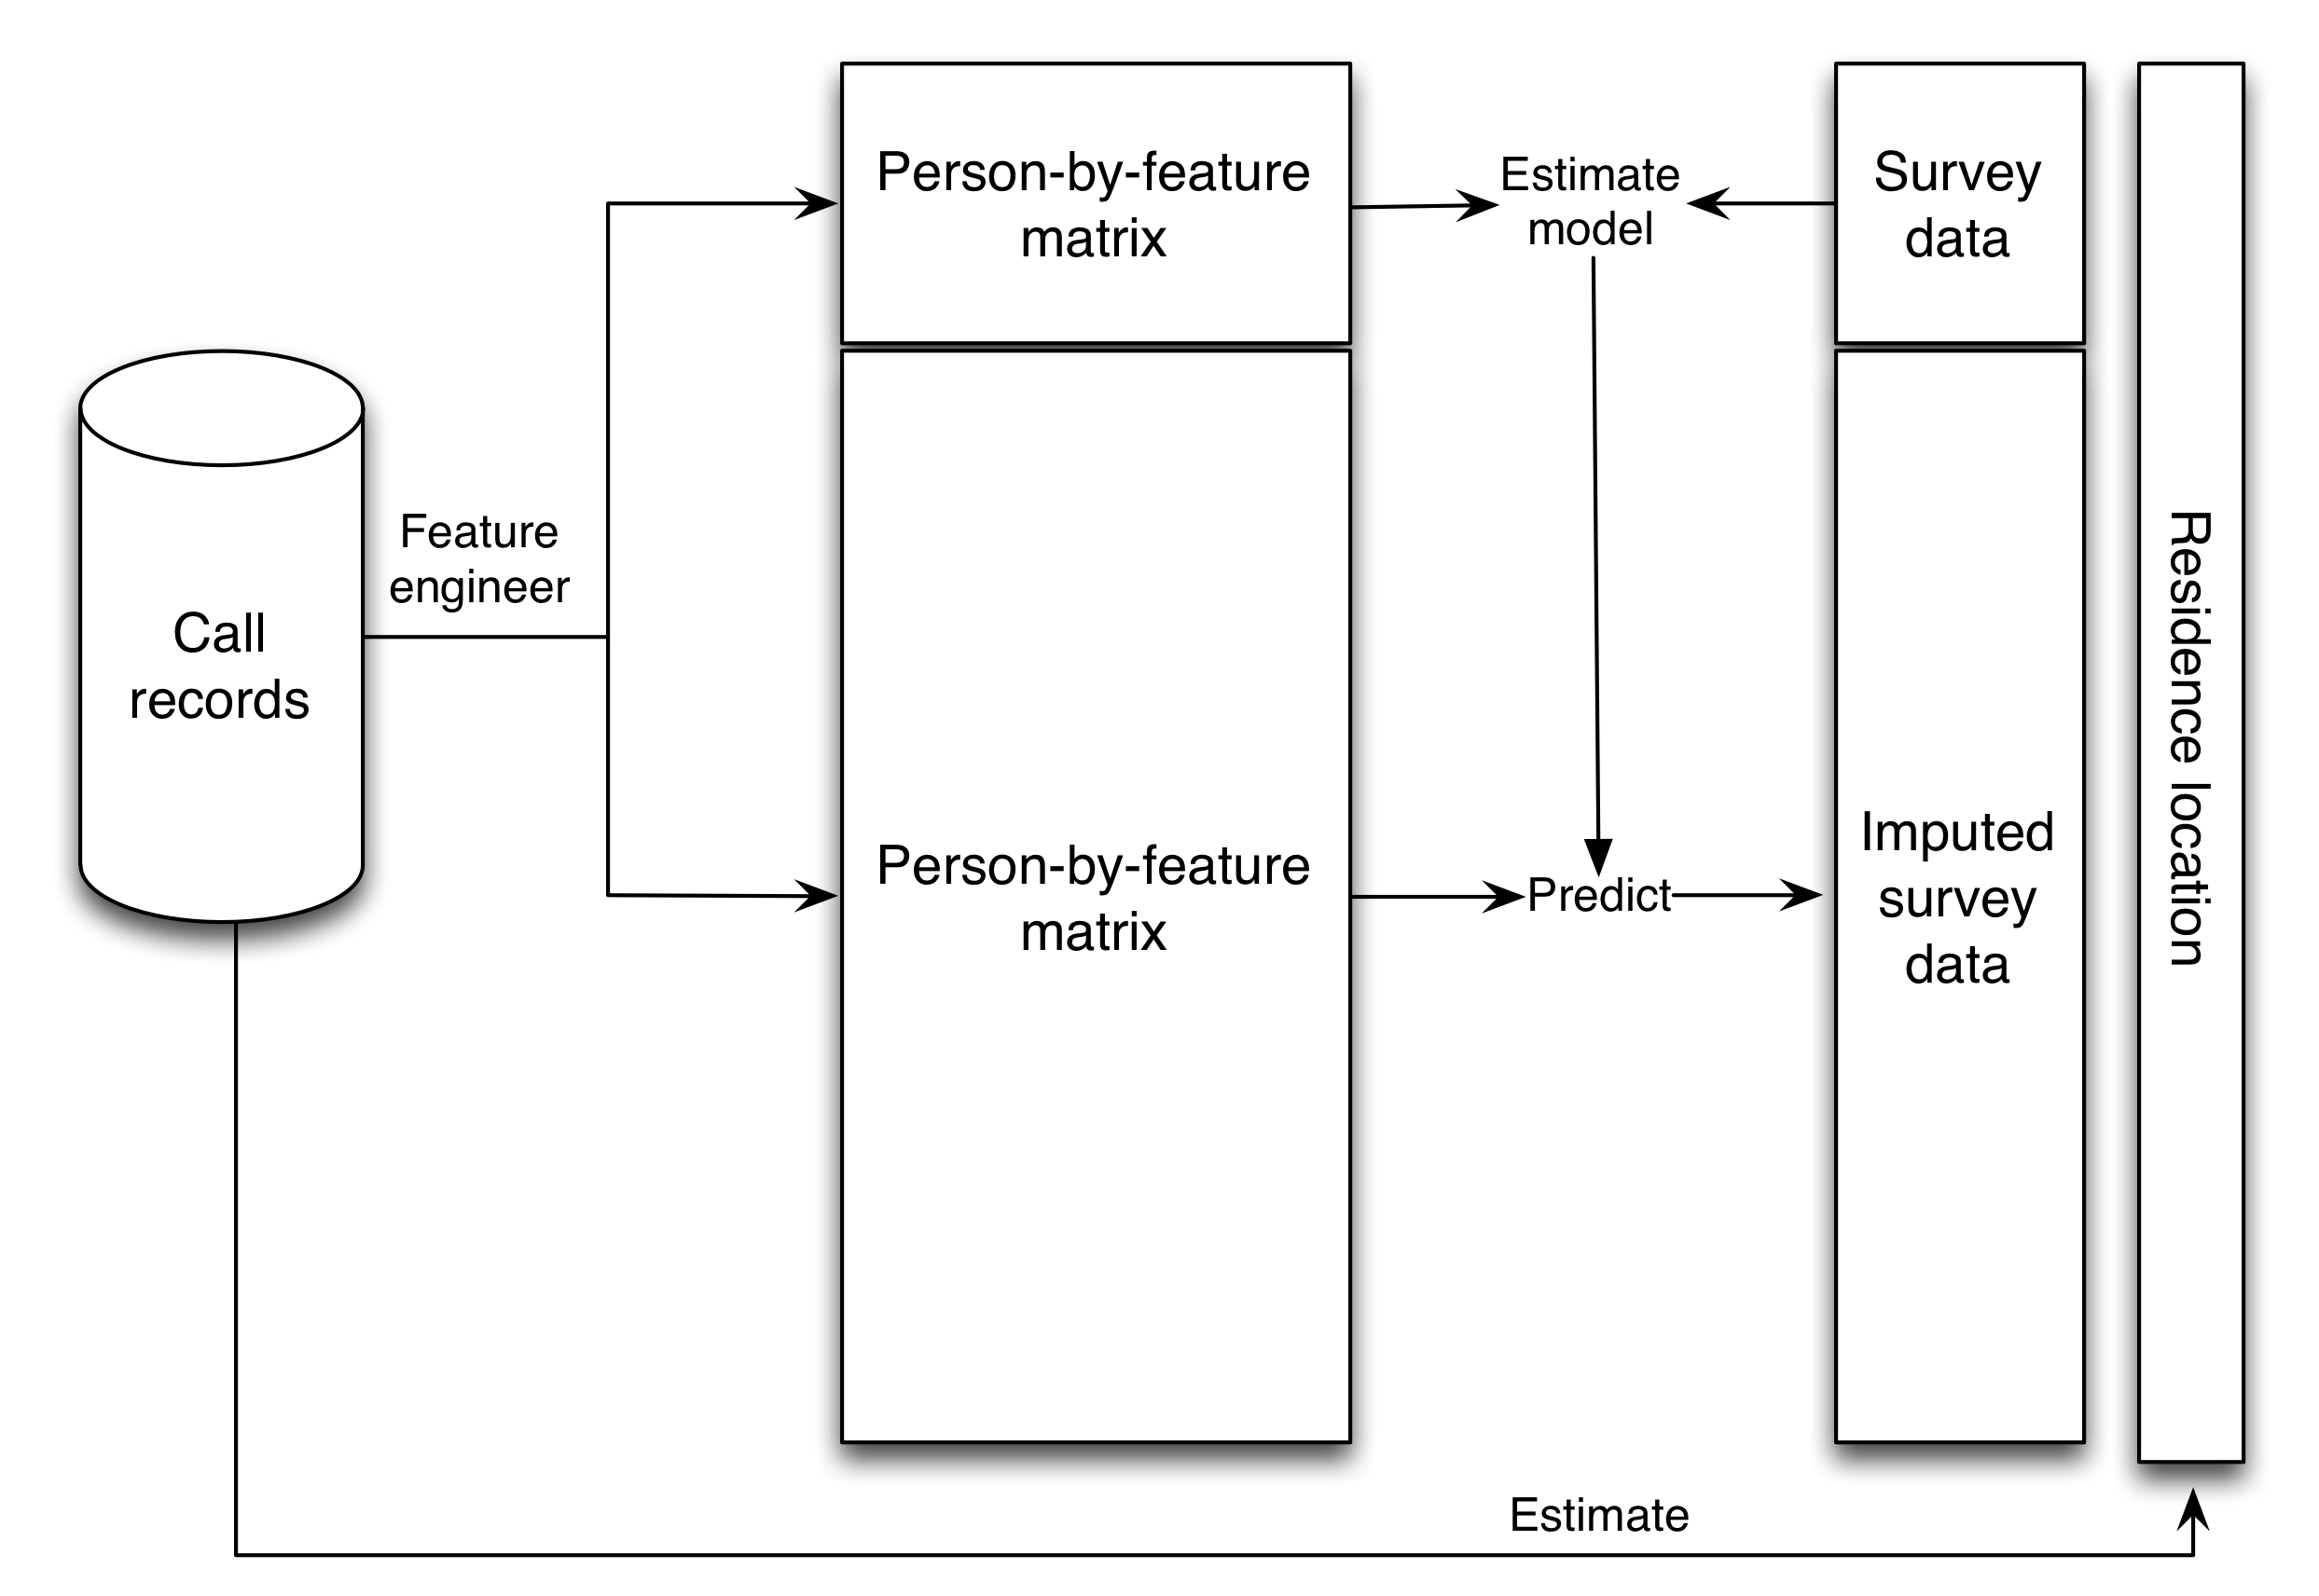 Figuur 3.16: Schematische weergave van de studie van Blumenstock, Cadamuro en On (2015). Oproeprecords van het telefoonbedrijf werden geconverteerd naar een matrix met één rij voor elke persoon en één kolom voor elke functie (d.w.z. variabele). Vervolgens bouwden de onderzoekers een gesuperviseerd leermodel om de antwoorden op het onderzoek te voorspellen van de matrix van persoon tot persoon. Vervolgens werd het gesuperviseerde leermodel gebruikt om de enquêtereacties toe te rekenen aan alle 1,5 miljoen klanten. Ook schatten de onderzoekers de geschatte woonplaats voor alle 1,5 miljoen klanten op basis van de locaties van hun oproepen. Wanneer deze twee schattingen - de geschatte rijkdom en de geschatte woonplaats - werden gecombineerd, waren de resultaten vergelijkbaar met schattingen uit de Demographic and Health Survey, een traditionele enquête met een gouden standaard (figuur 3.17).